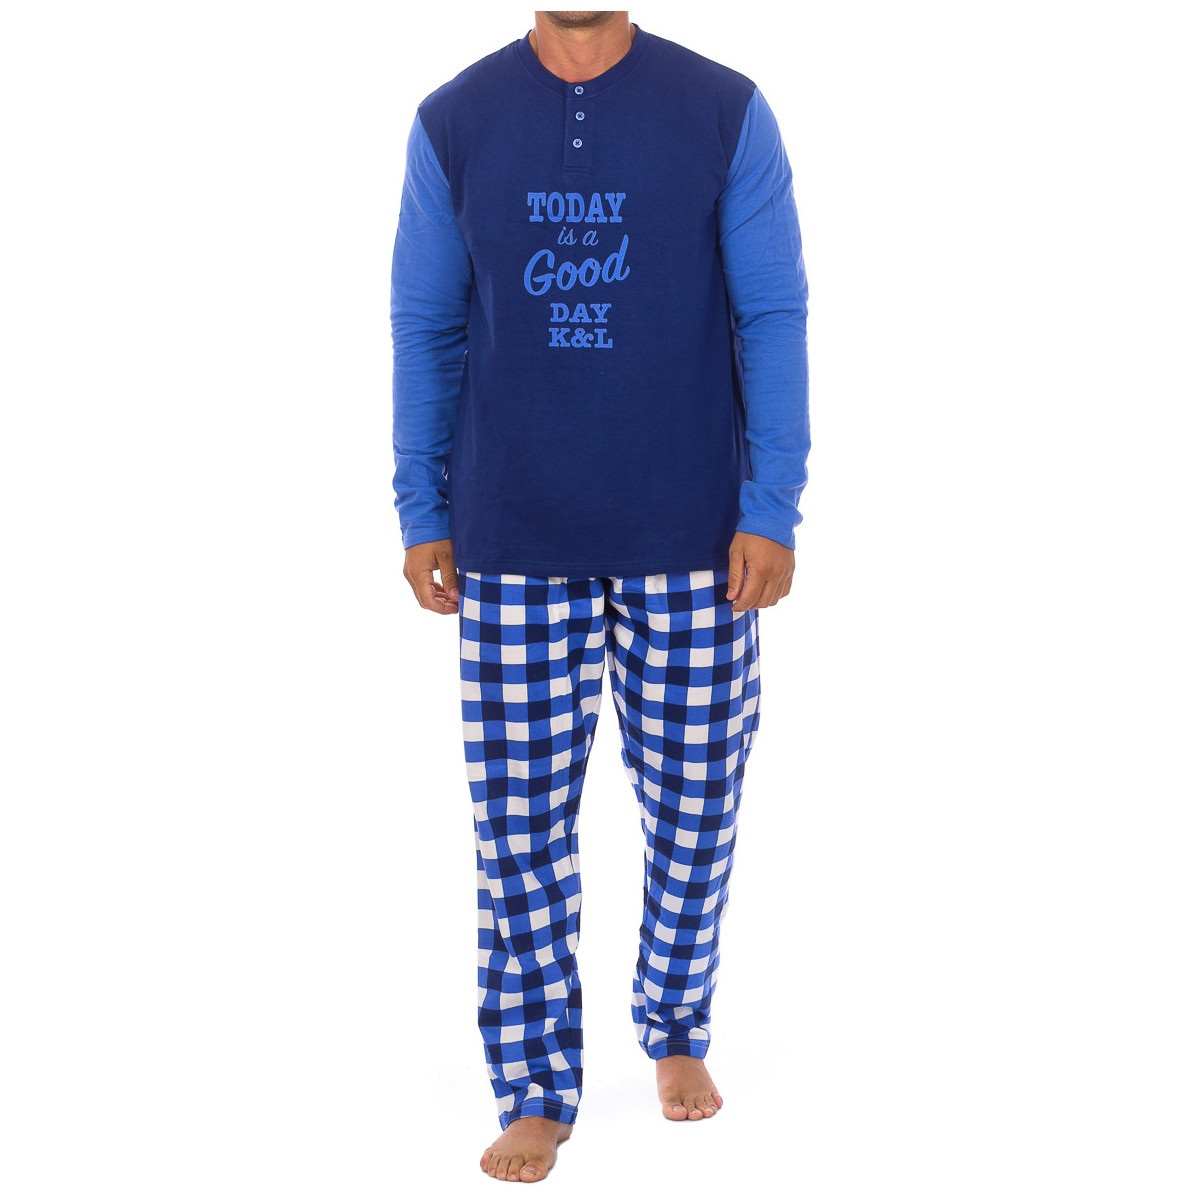 Textiel Heren Pyjama's / nachthemden Kisses&Love KL130149 Blauw